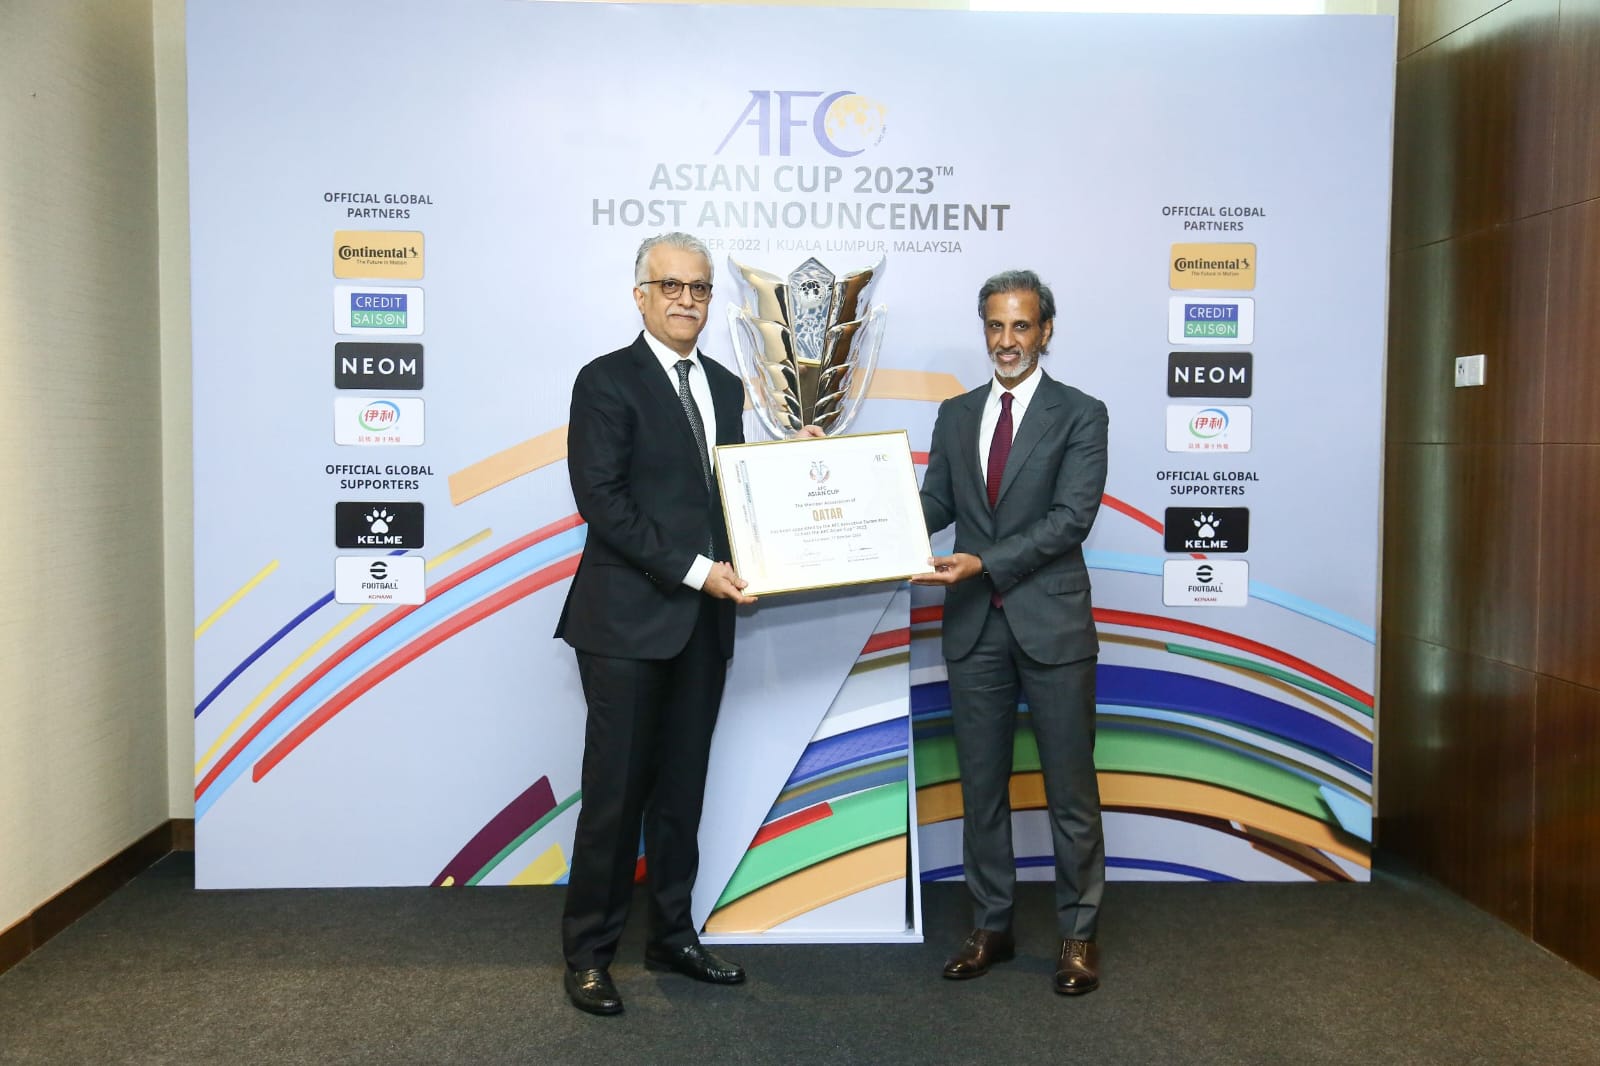 رئيس الاتحاد الآسيوي يسلم رئيس الإتحاد القطري شهادة تنظيم البطولة (الأمة برس)